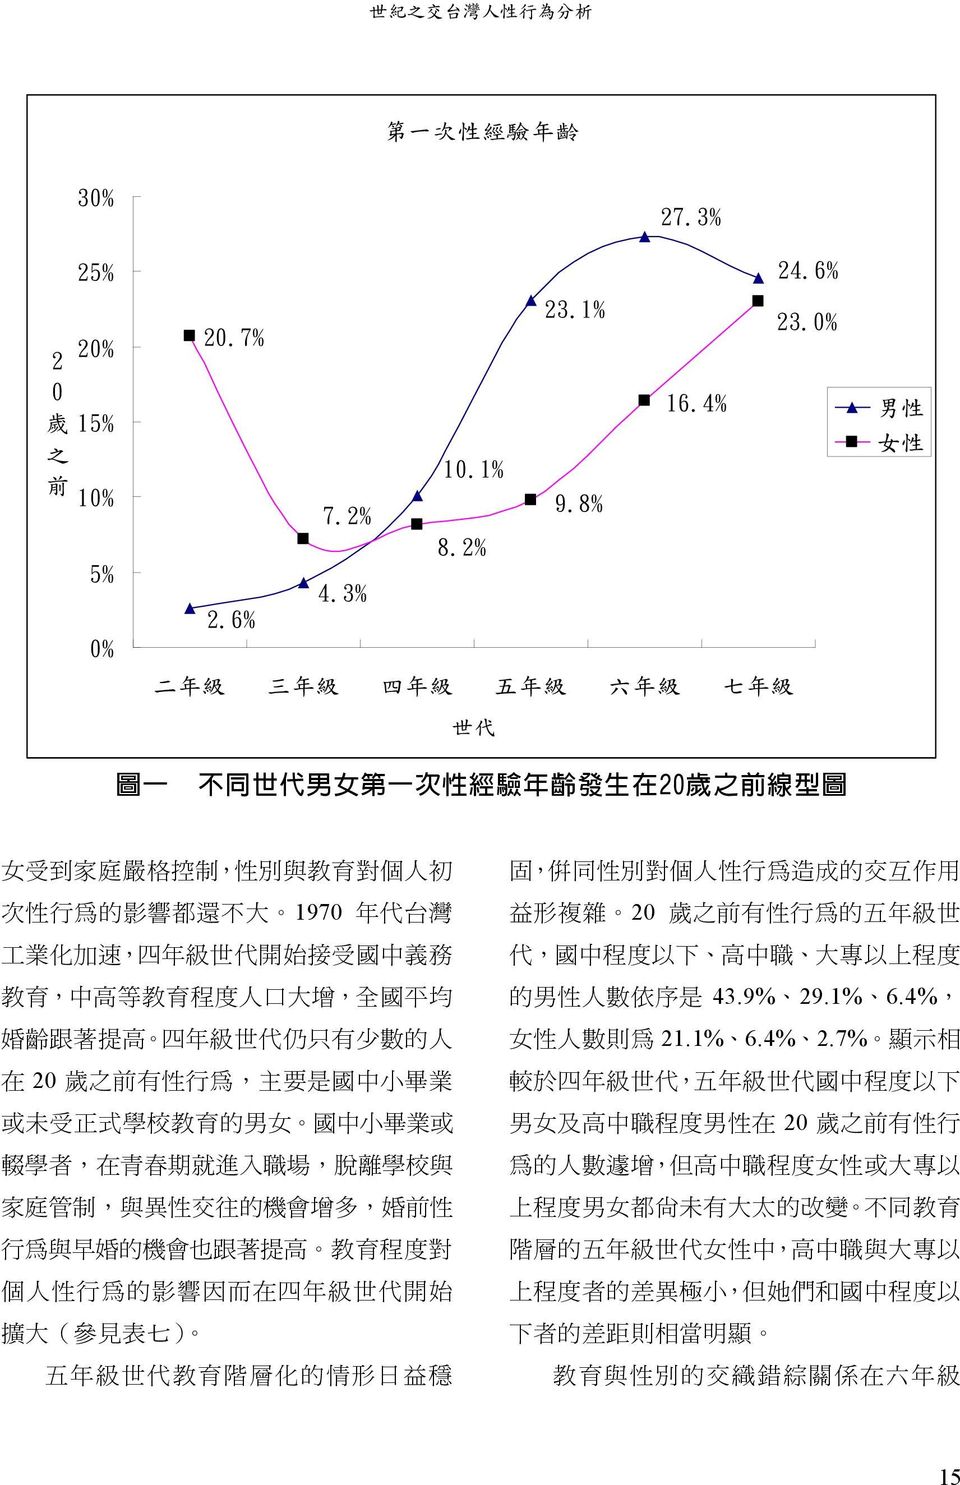 6% 二 年 級 三 年 級 四 年 級 五 年 級 六 年 級 七 年 級 世 代 男 性 女 性 圖 一 不 同 世 代 男 女 第 一 次 性 經 驗 年 齡 發 生 在 20 歲 之 前 線 型 圖 女 受 到 家 庭 嚴 格 控 制, 性 別 與 教 育 對 個 人 初 次 性 行 為 的 影 響 都 還 不 大 1970 年 代 台 灣 工 業 化 加 速, 四 年 級 世 代 開